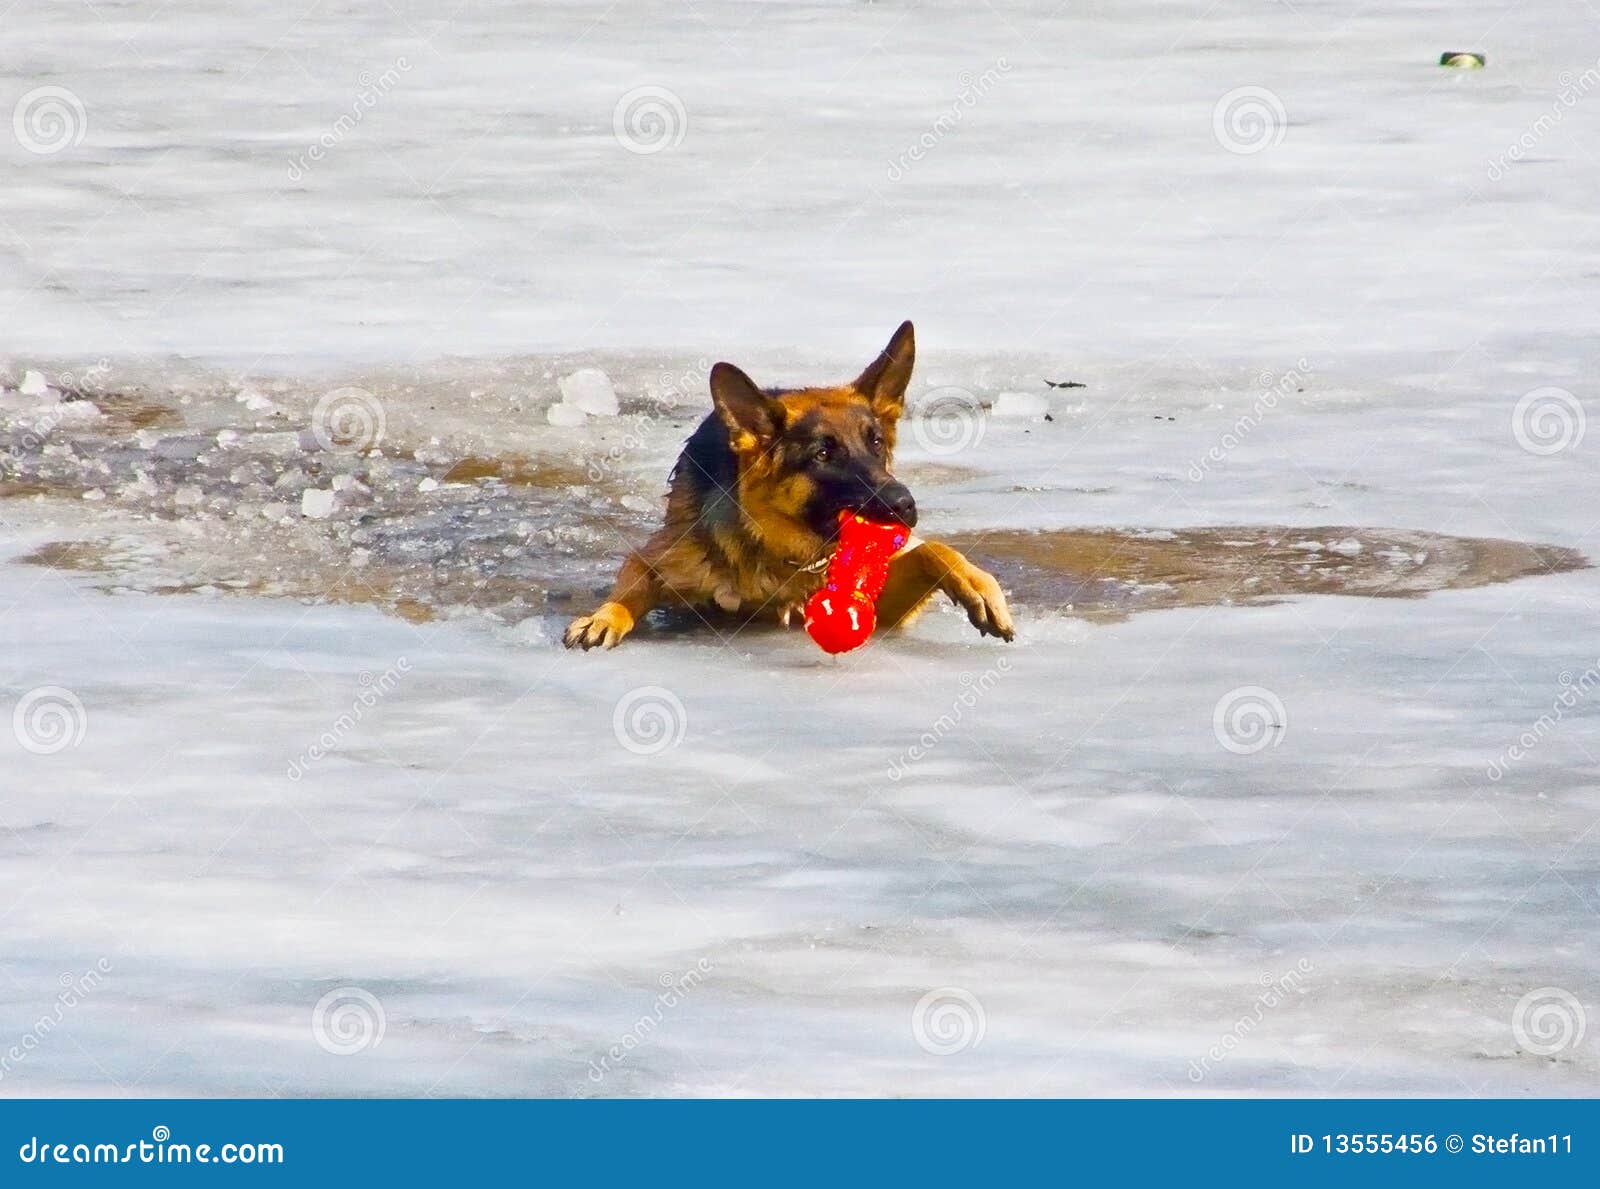 狗不幸的人水. 狗落冰流玩具下